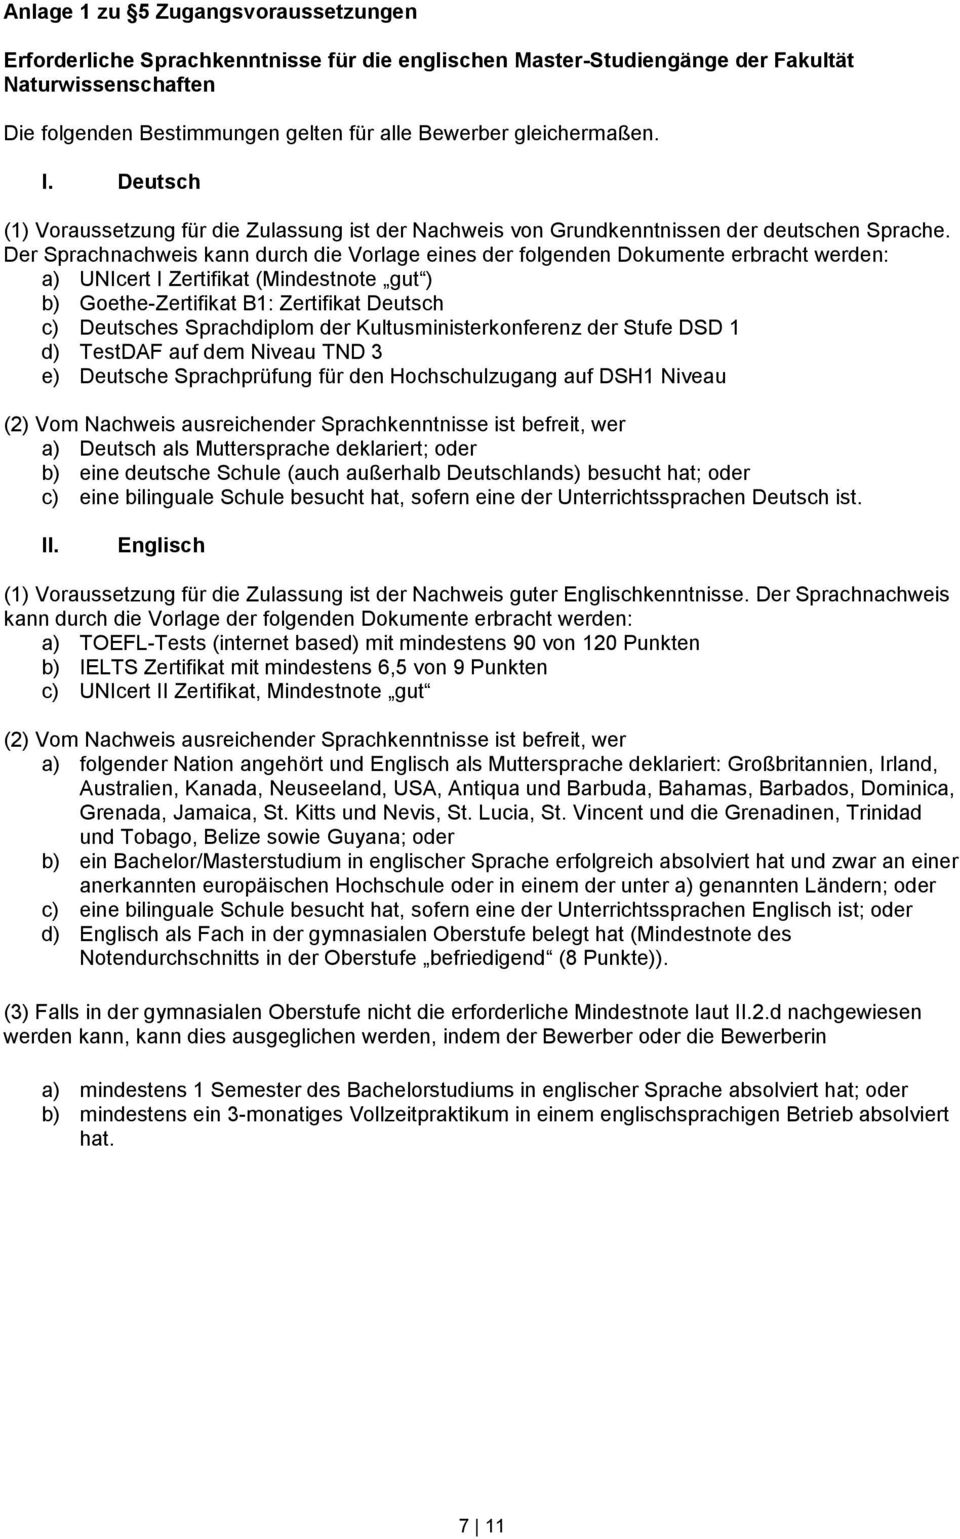 Der Sprachnachweis kann durch die Vorlage eines der folgenden Dokumente erbracht werden: a) UNIcert I Zertifikat (Mindestnote gut ) b) Goethe-Zertifikat B1: Zertifikat Deutsch c) Deutsches